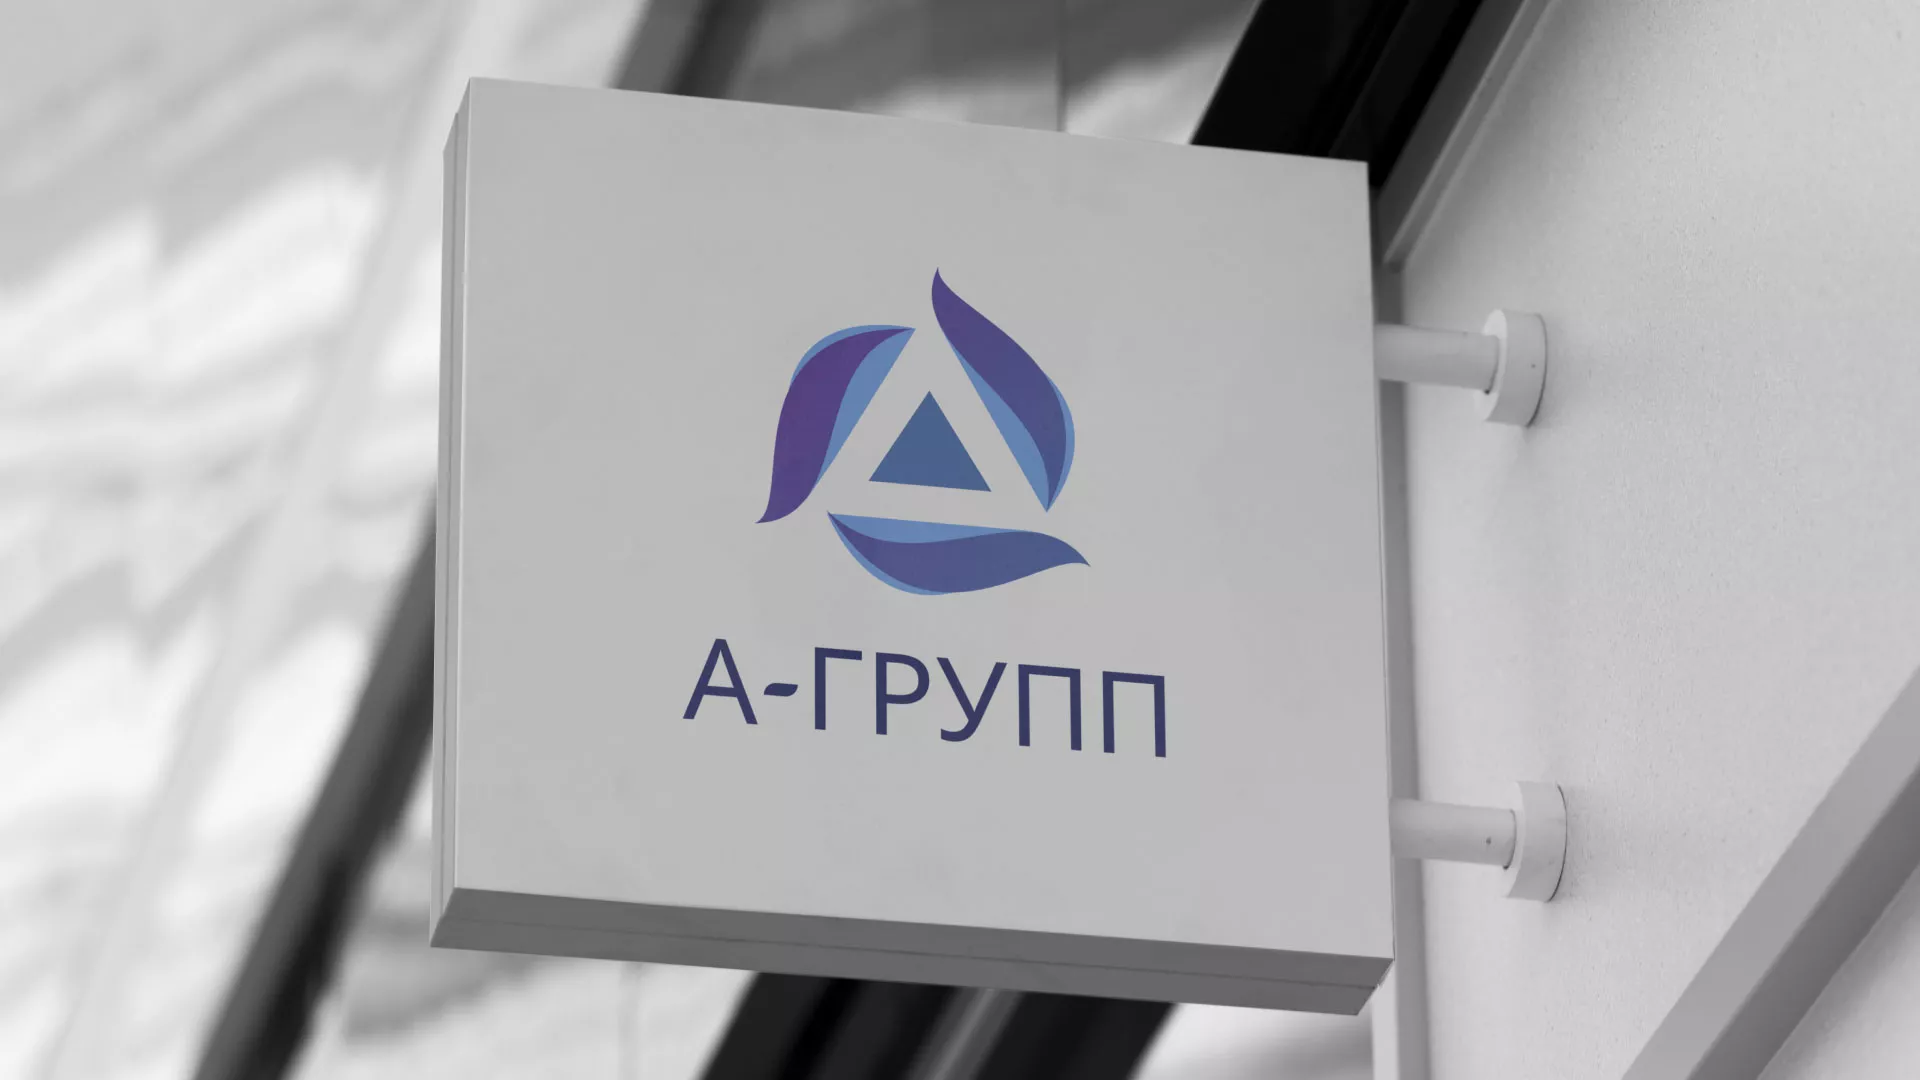 Создание логотипа компании «А-ГРУПП» в Юбилейном